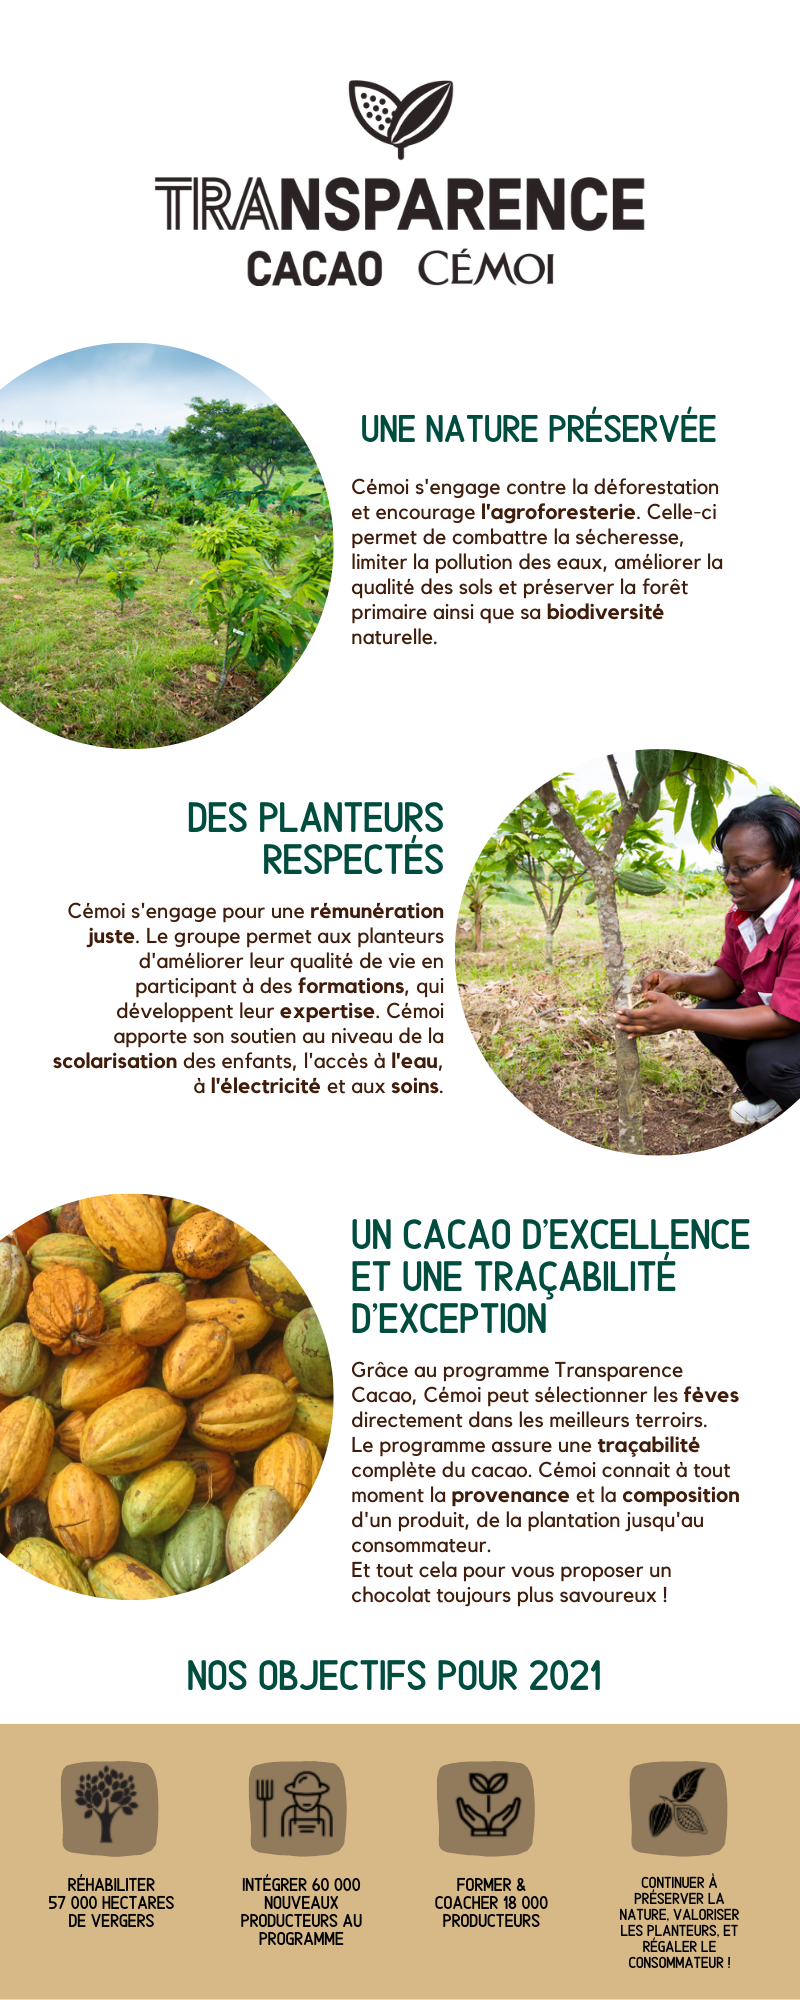 Cémoi s'engage en faveur d'un cacao durable avec son programme Transparence Cacao